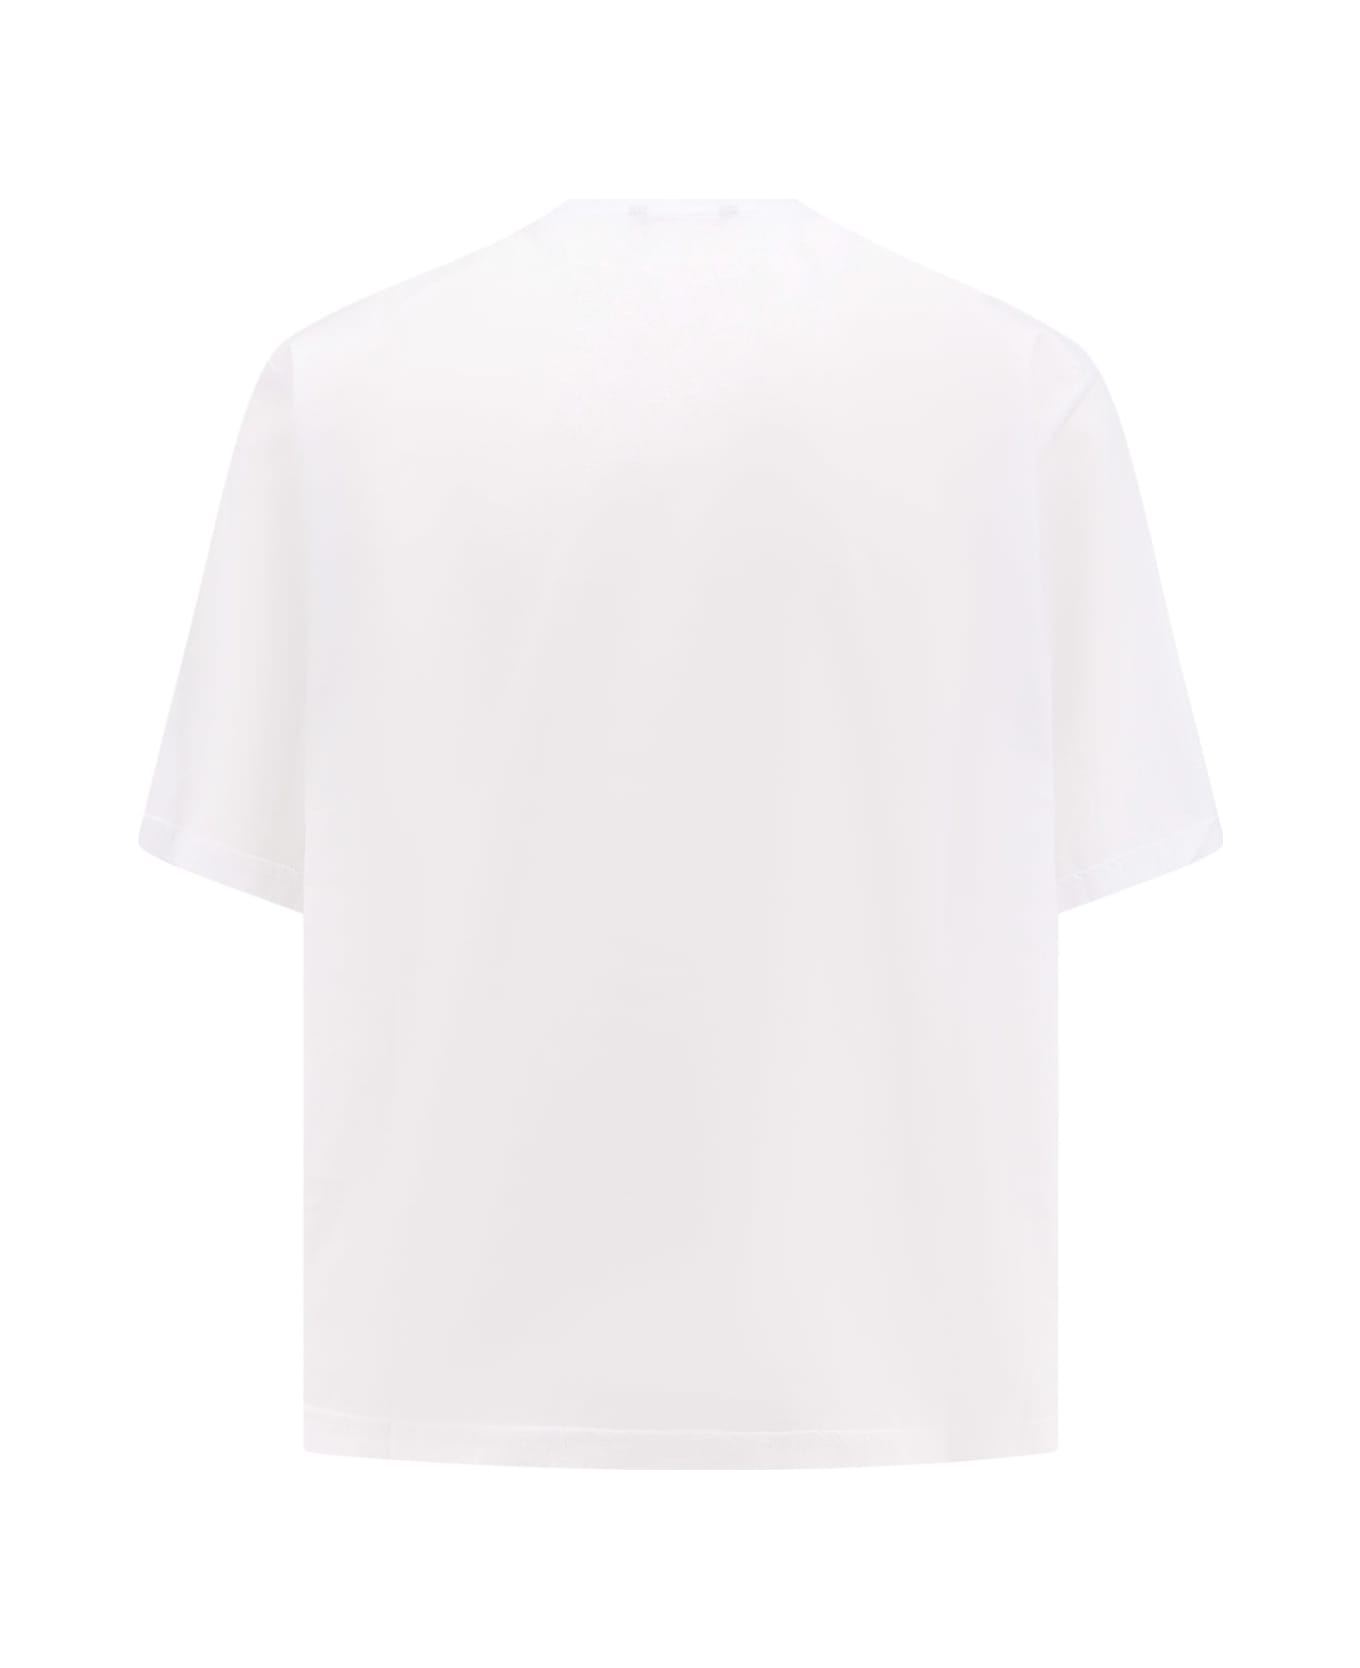 Hevò T-shirt - White